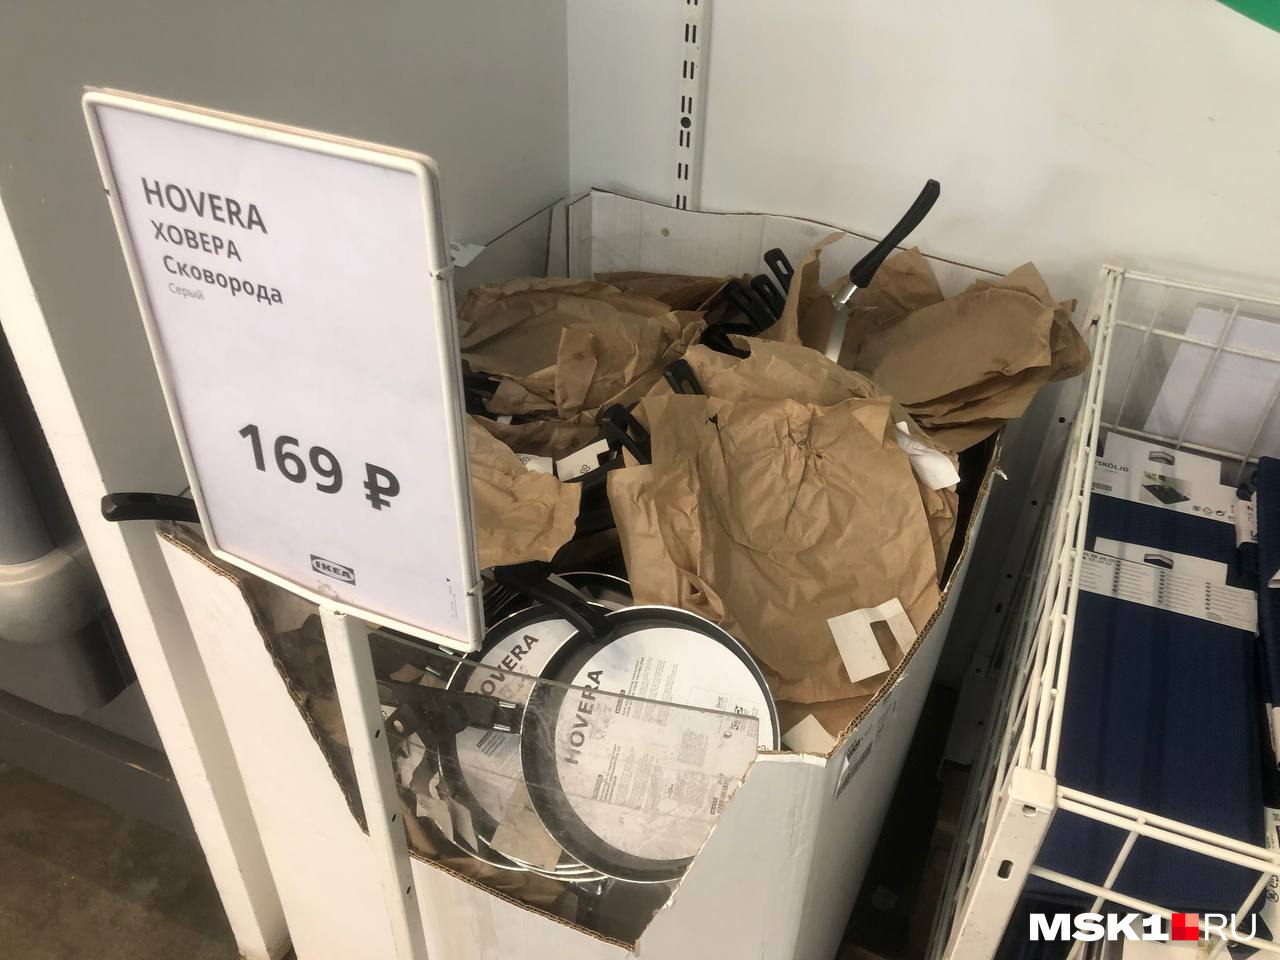 Популярные сковородки за 169 рублей снова в продаже!